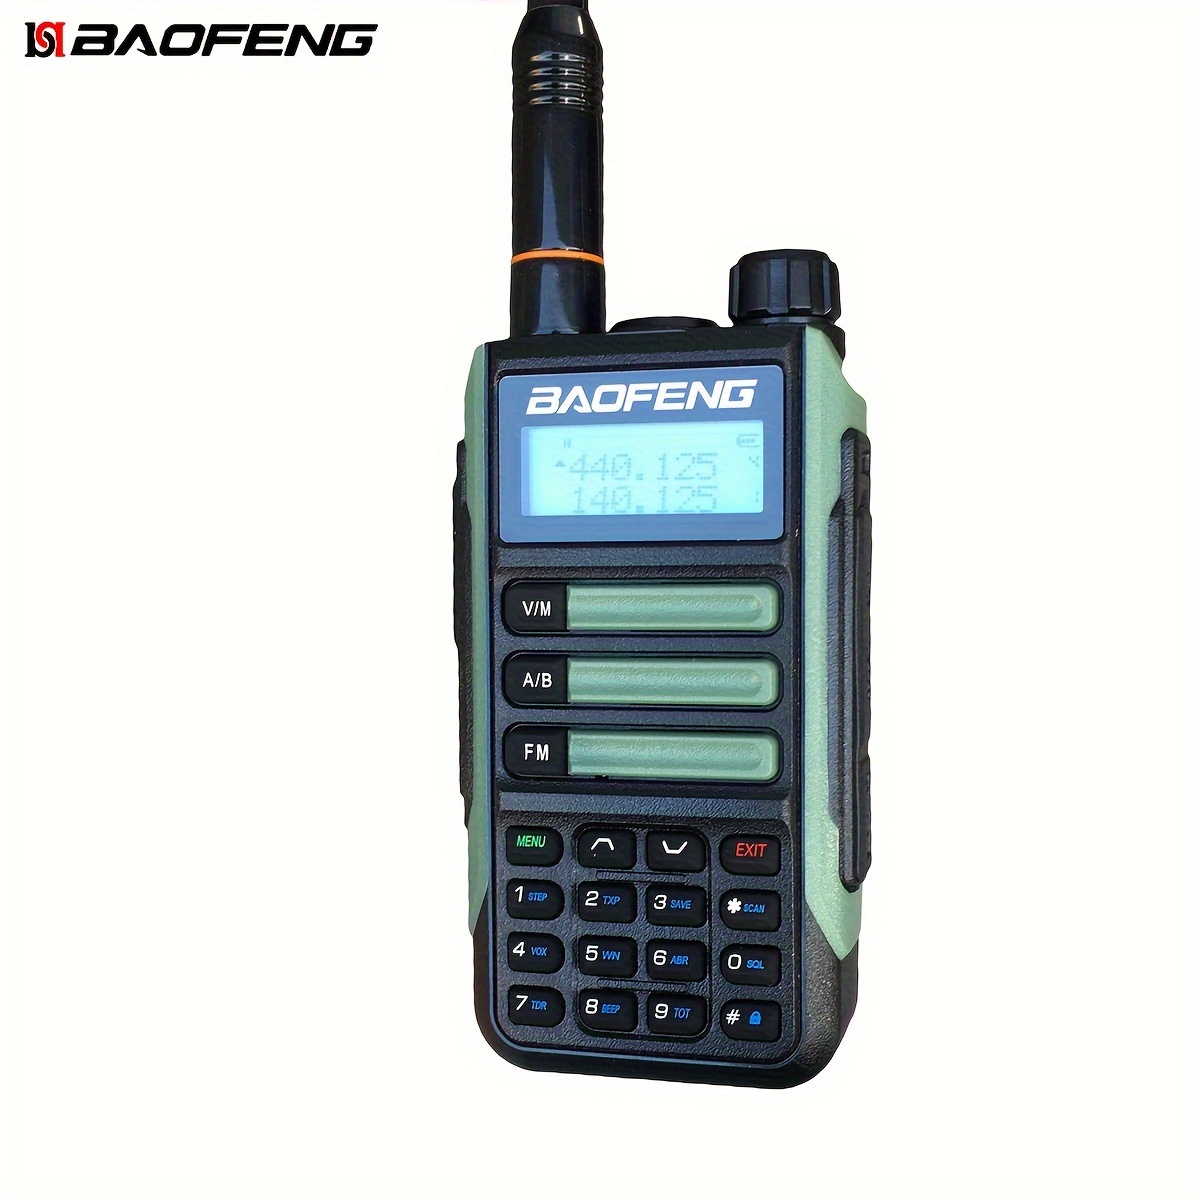 Baofeng - 1pza Radio Bidireccional Modelo Uv-5r Frecuencia  144-148/420-450mhz, Largo Alcance Bateria 1800mah, Encuentre Increíbles  Ofertas Ahora